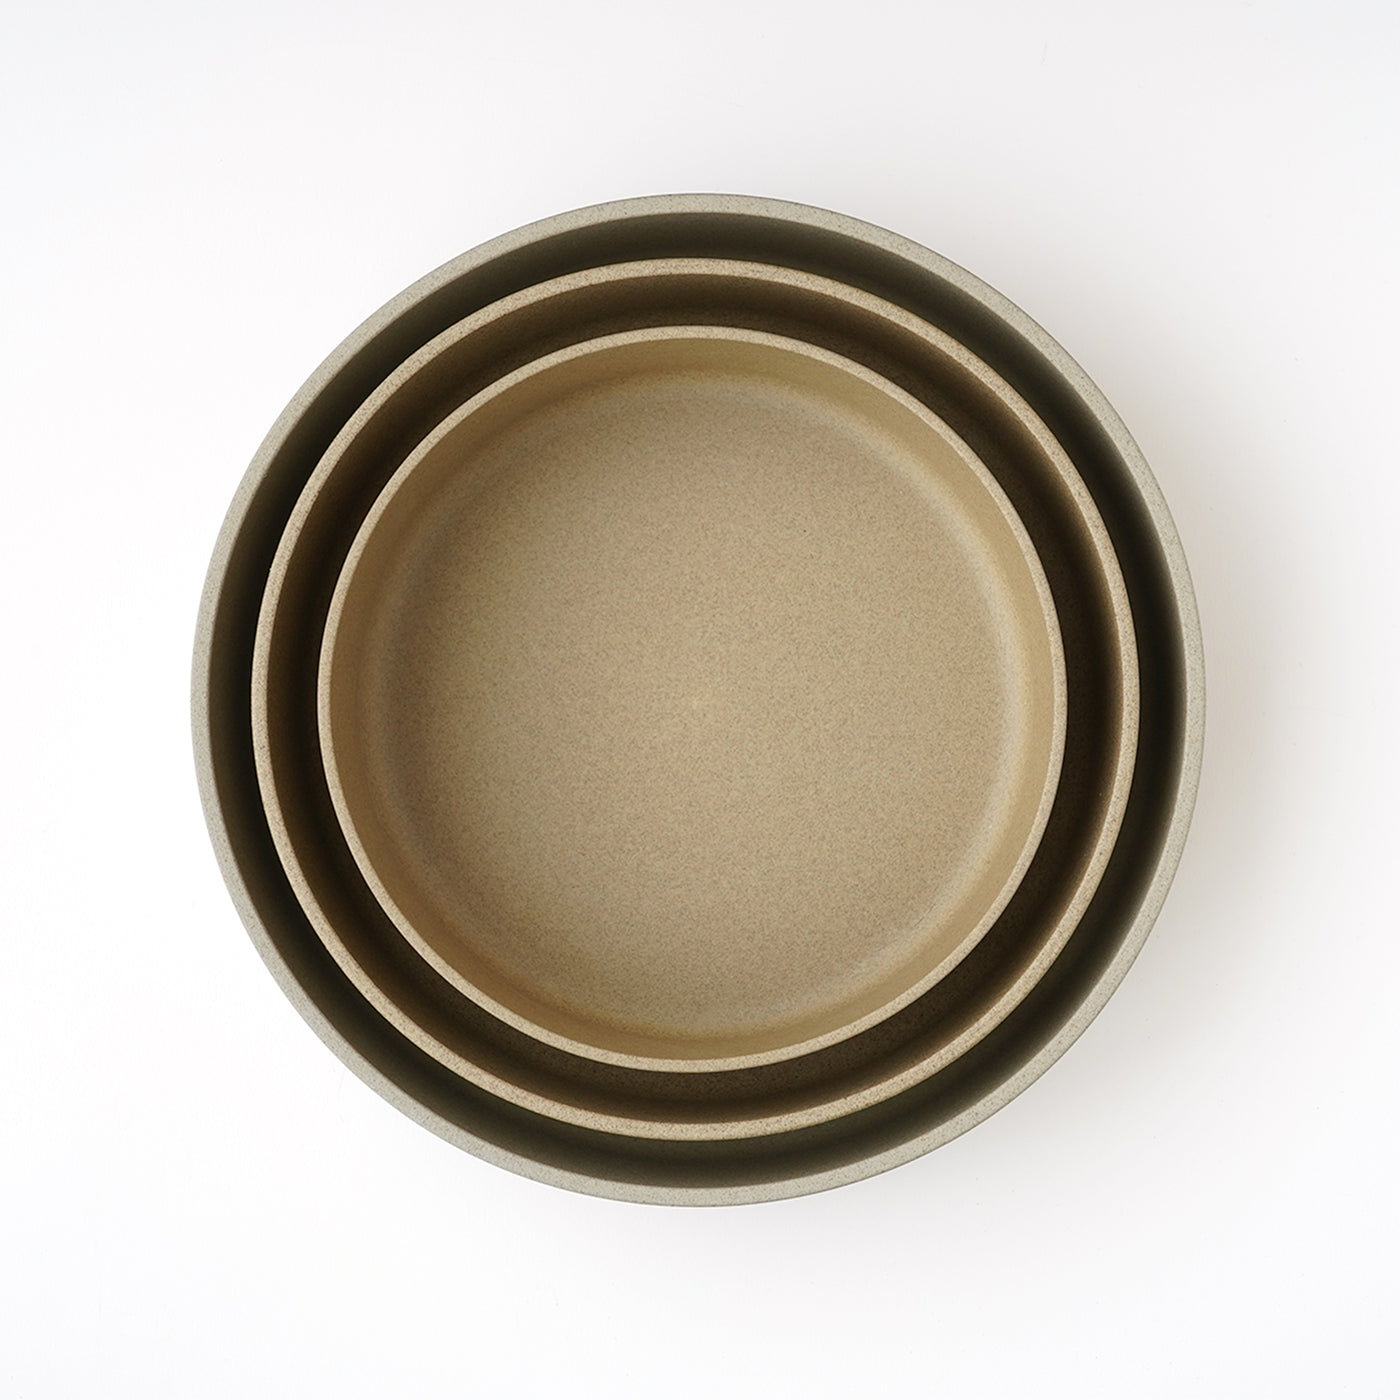 Hasami Porcelain Bowl 8 5/8" Natural